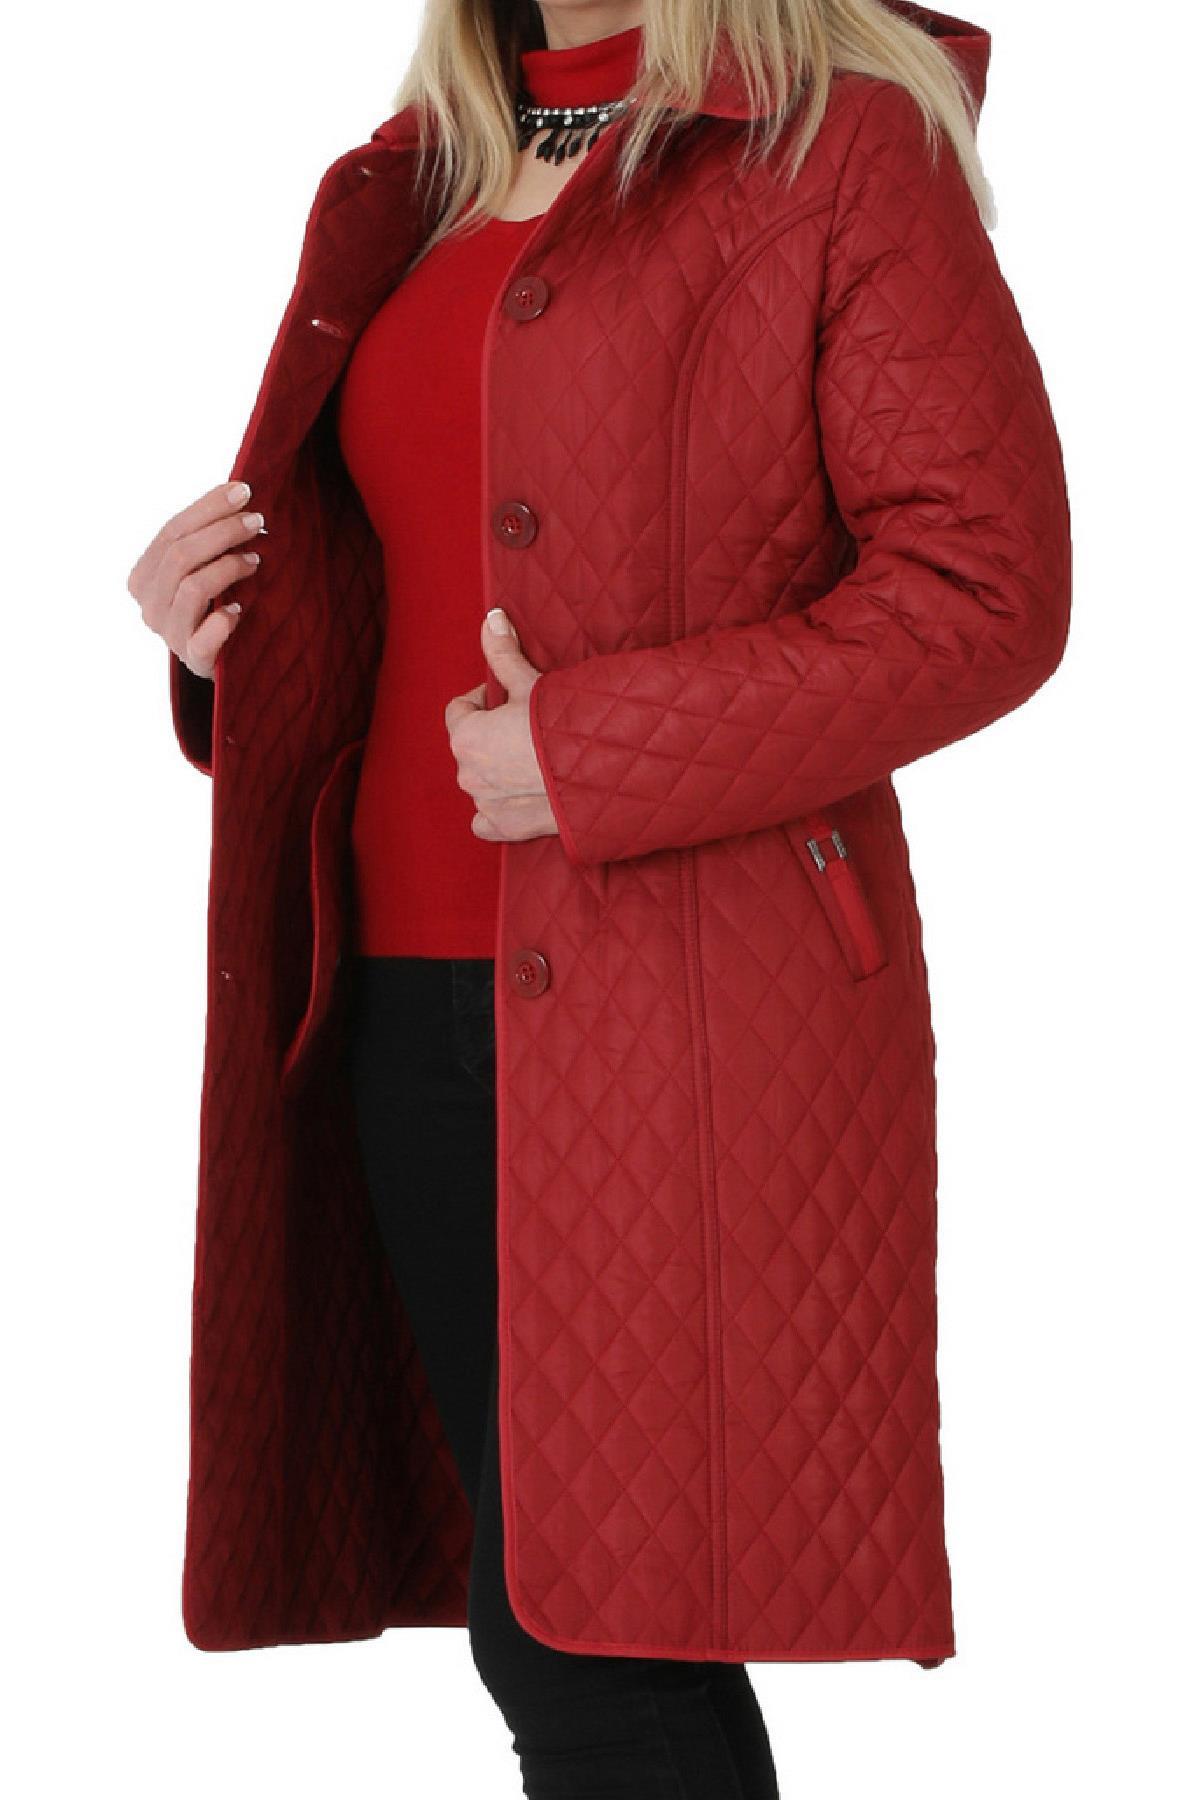 Fierte Kadın Büyük Beden Ceket Nvr10018 Kırmızı Lacivert Büyük Beden Dış Giyim